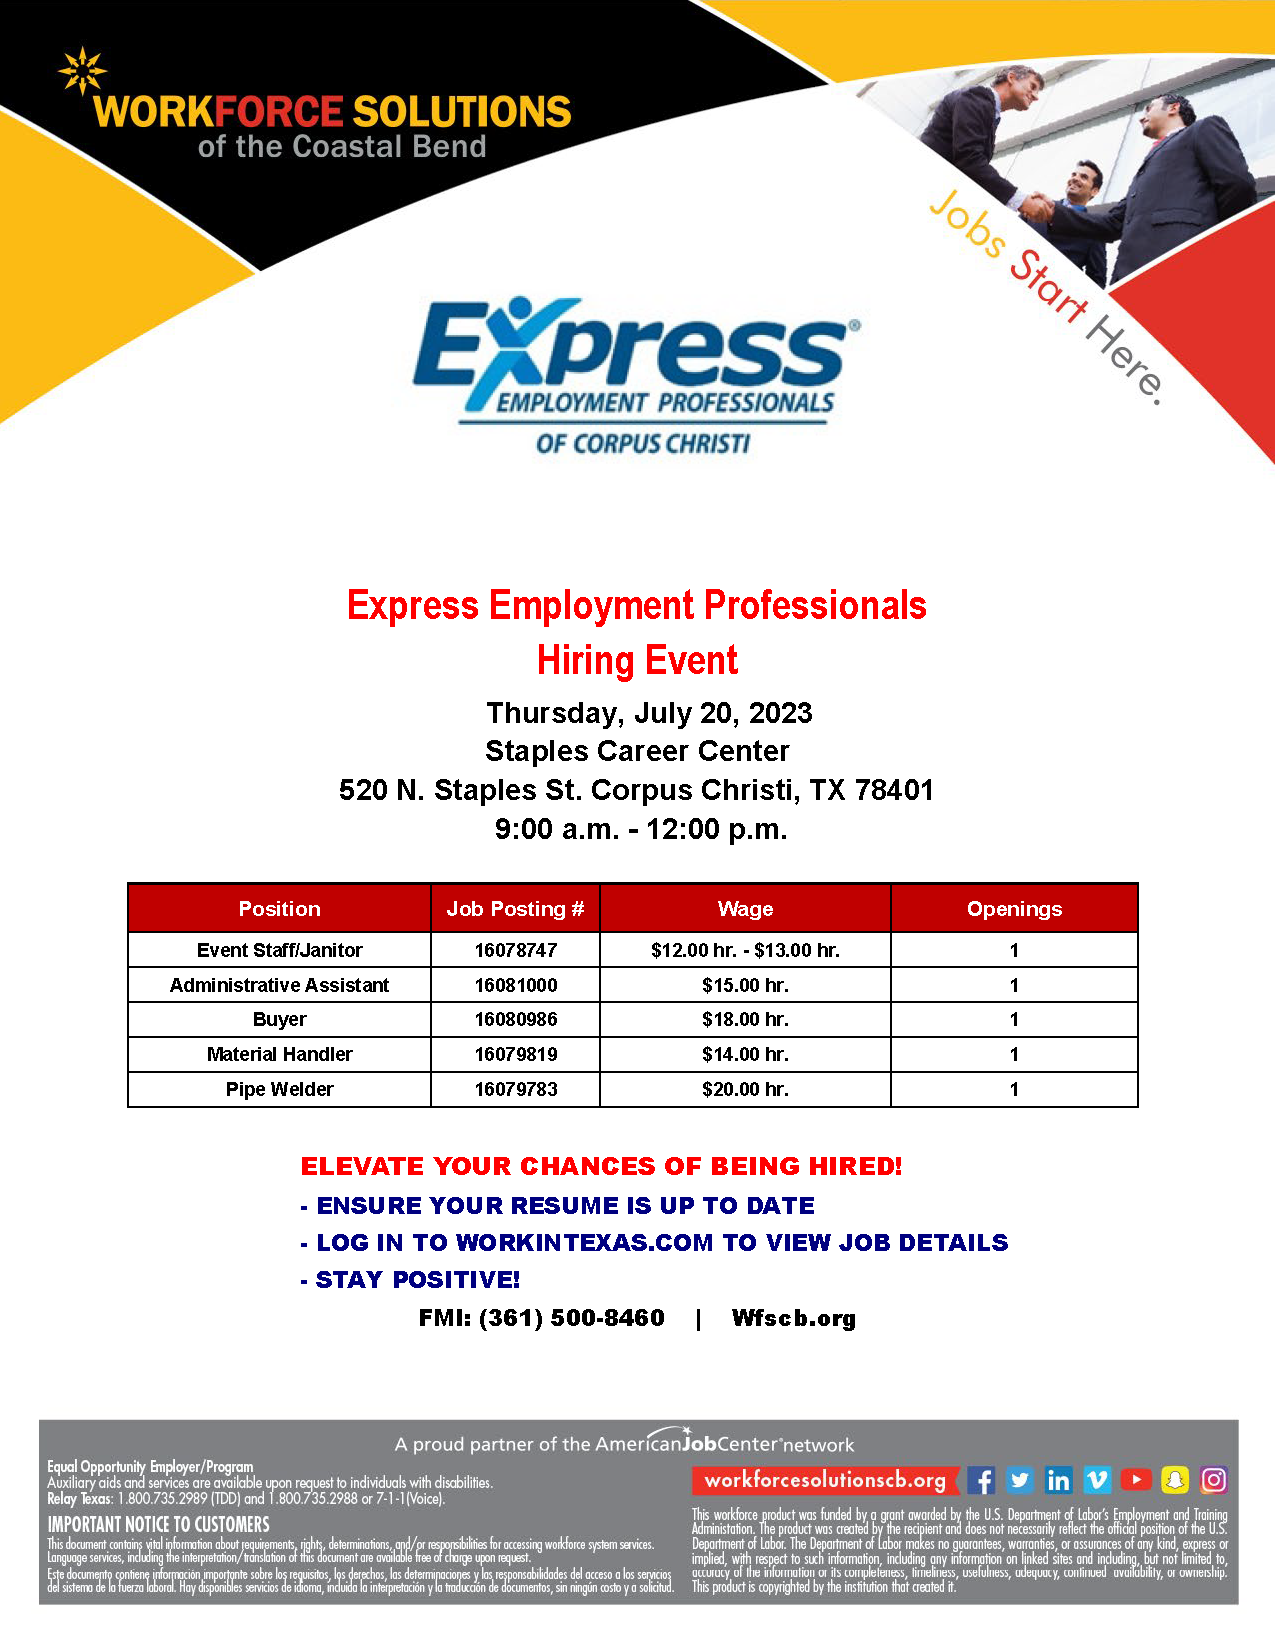 Express Employment 07 2023 hiring event flyer